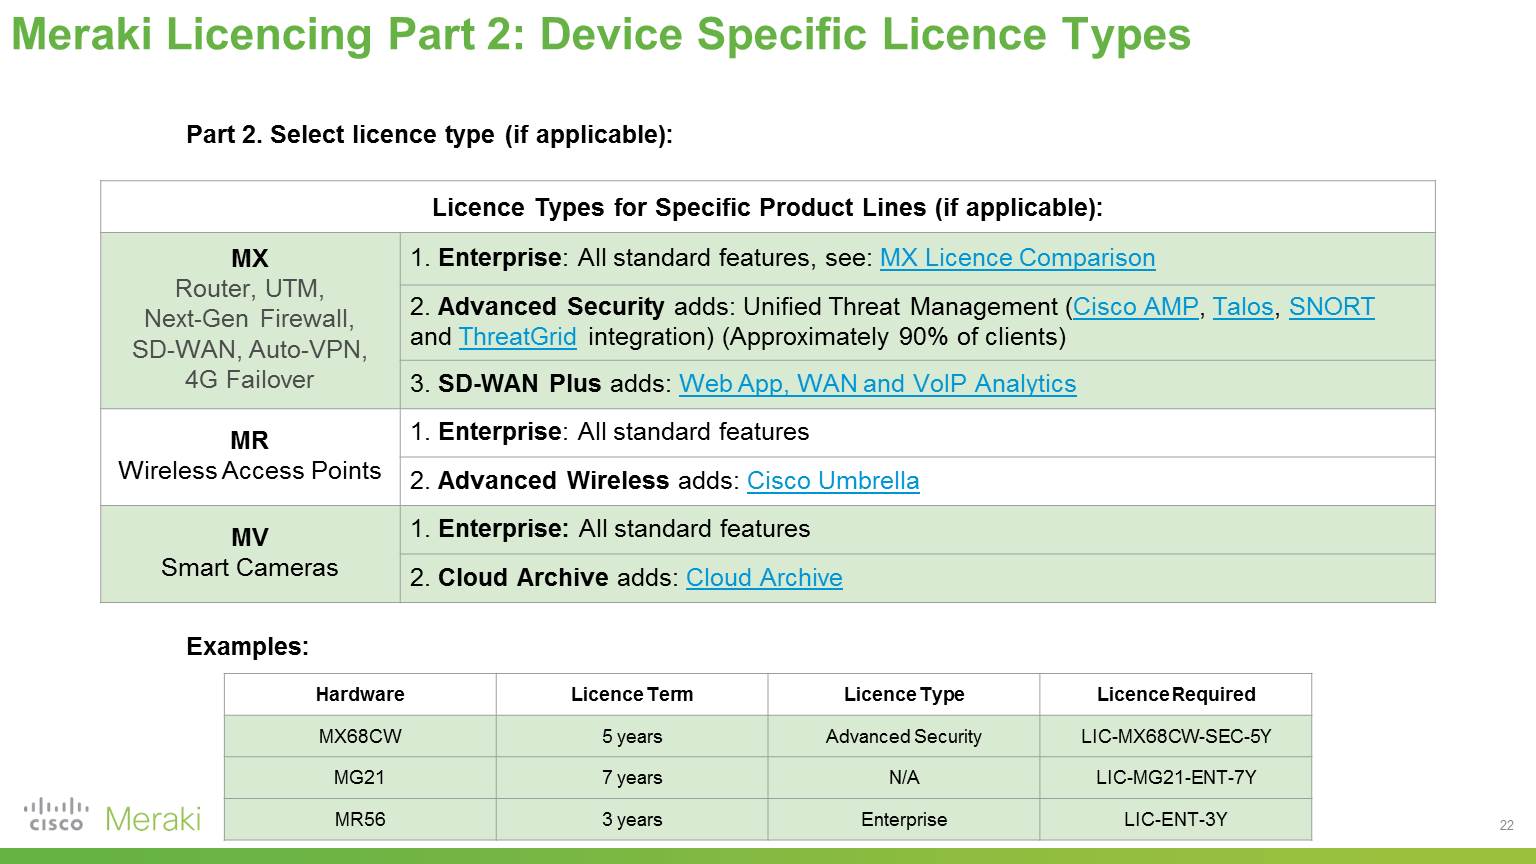 Meraki Licensing Device Specific License Types.